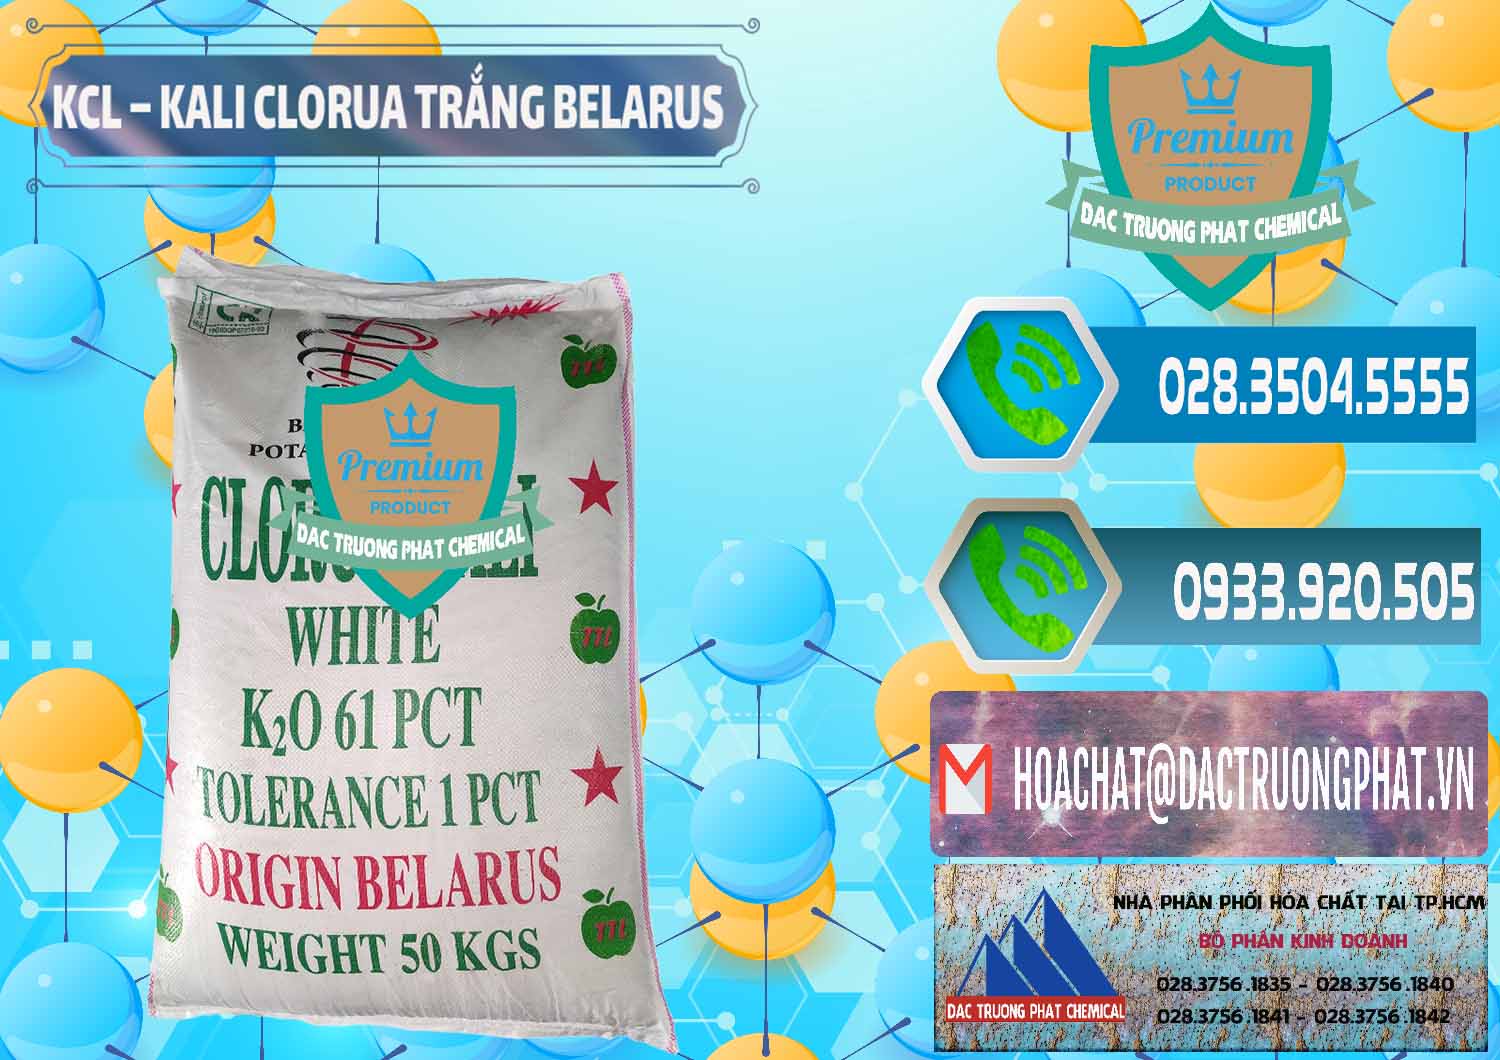 Cty chuyên phân phối - bán KCL – Kali Clorua Trắng Belarus - 0085 - Nhà cung cấp & bán hóa chất tại TP.HCM - congtyhoachat.net